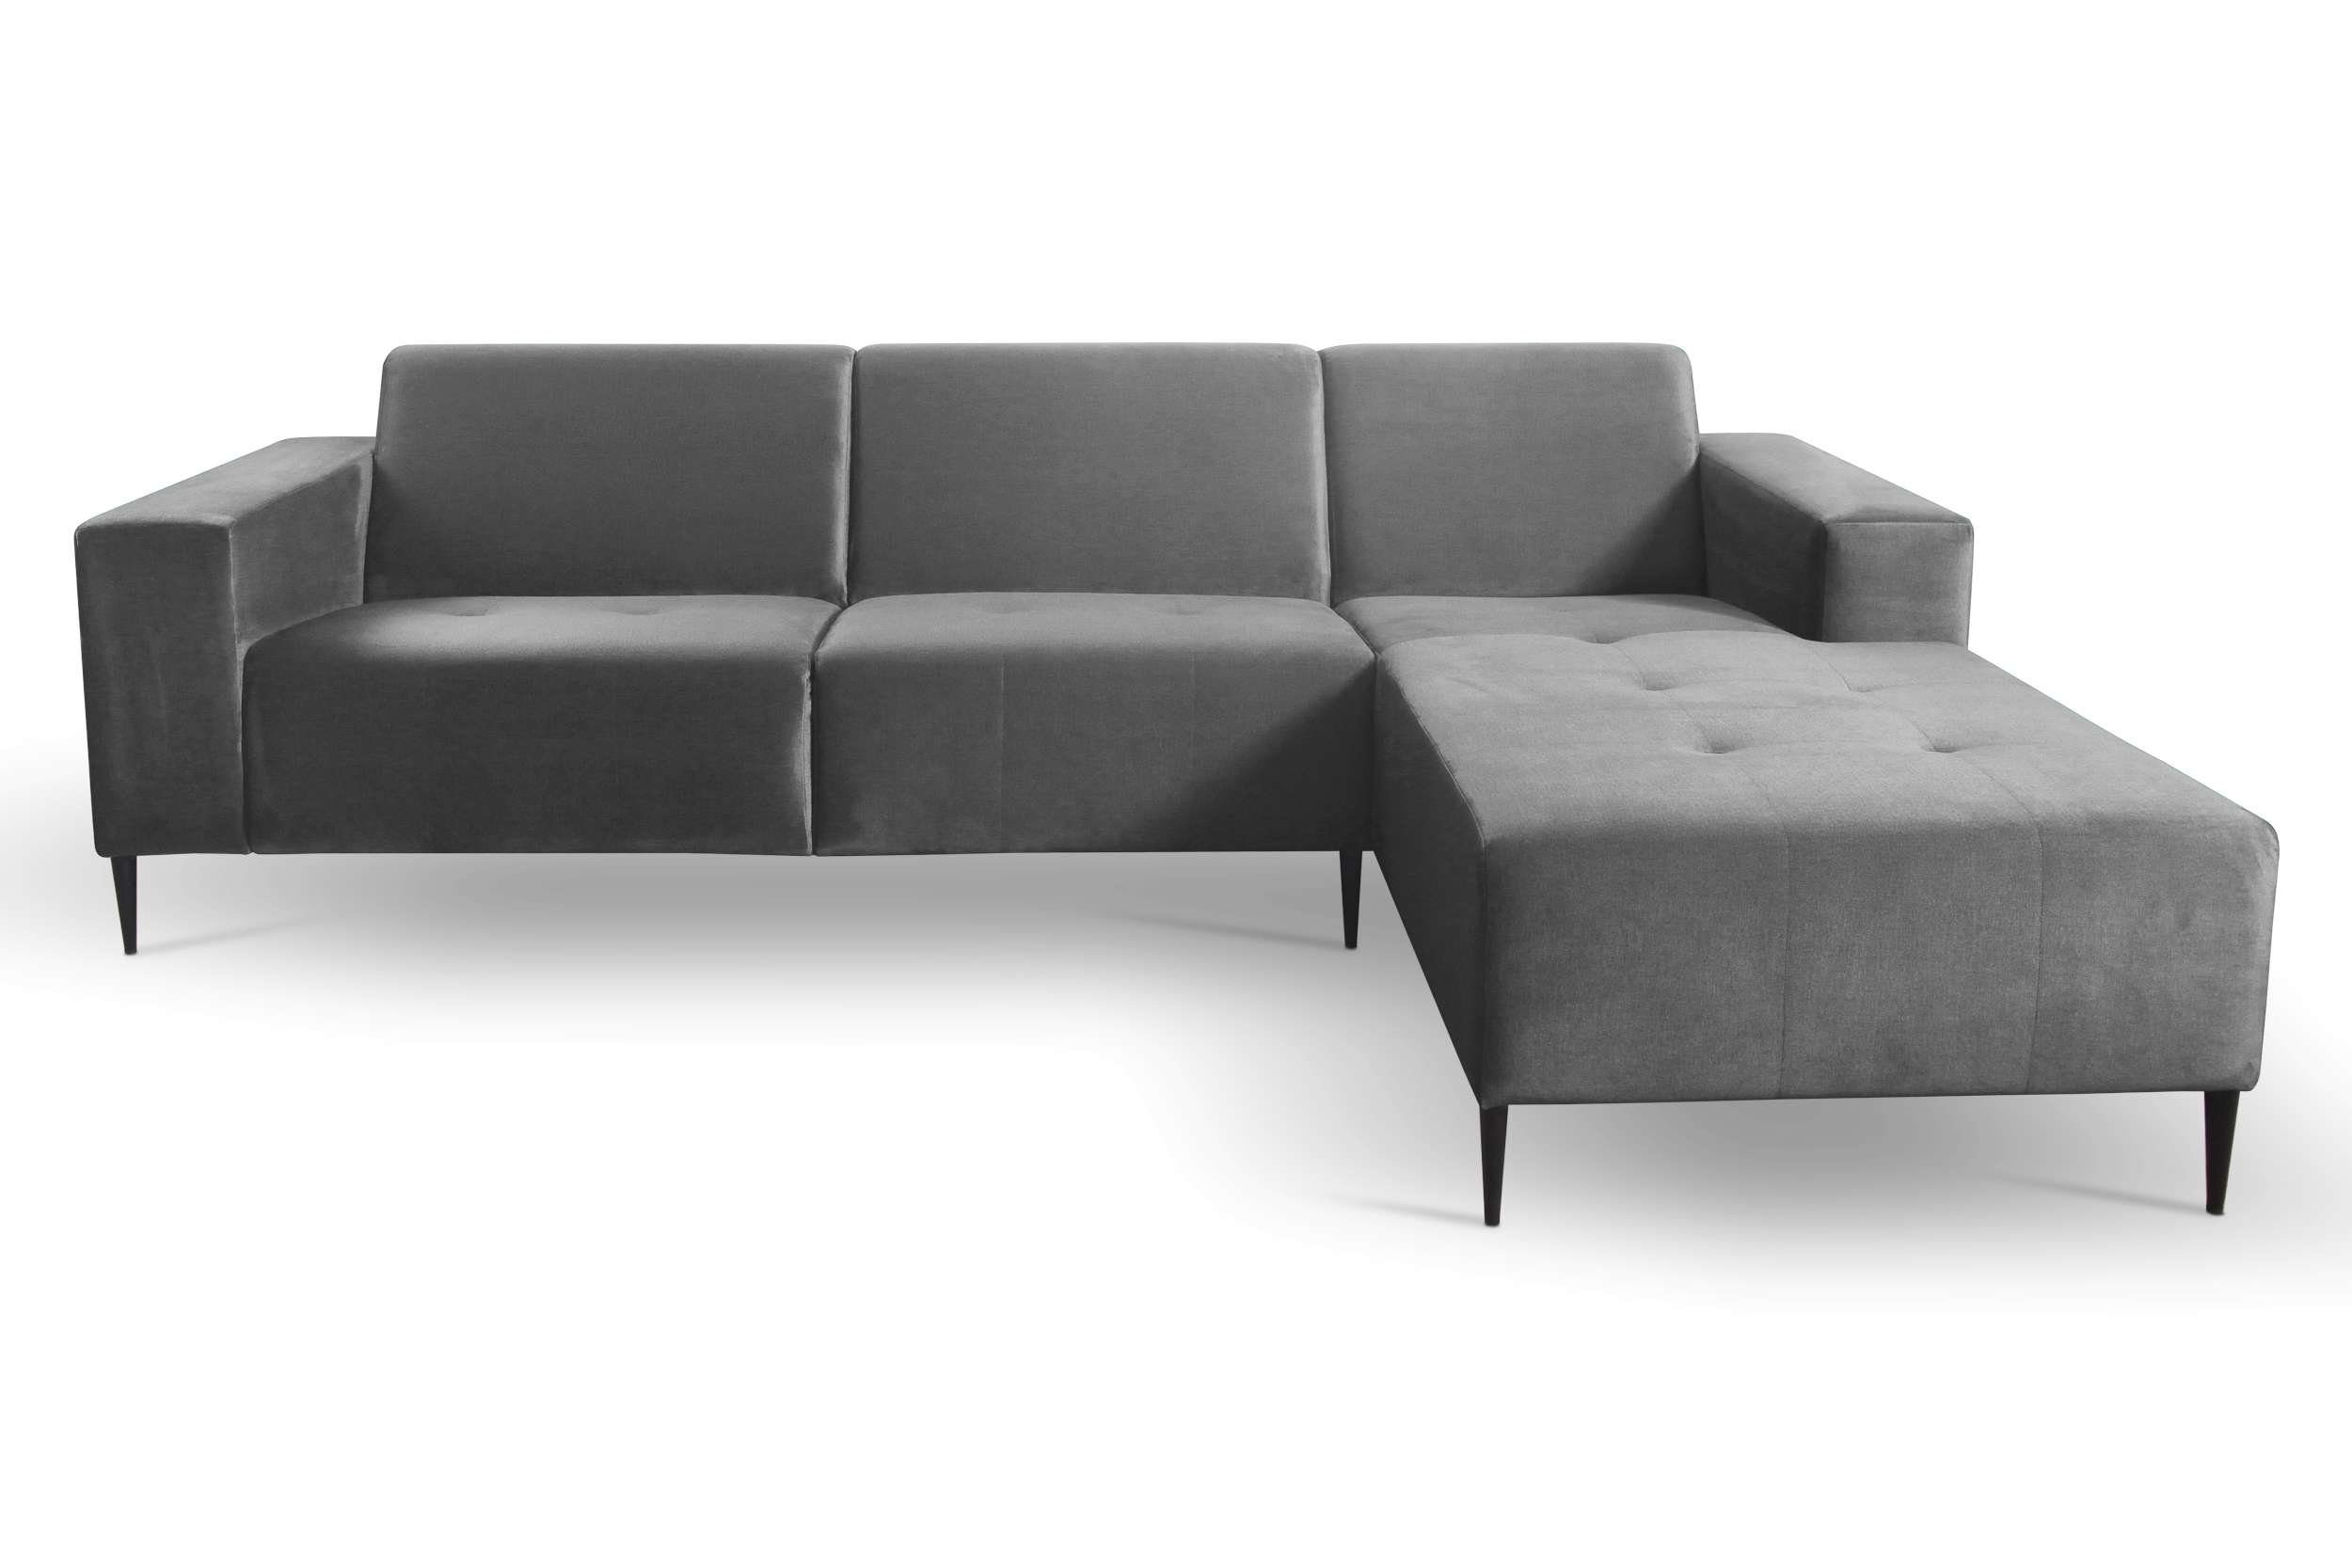 Mira, made oder Delphingrau Stylefy Sitzkomfort, im Relaxfunktion, rechts Europa Ecksofa Design, Raum links L-Form, in frei stellbar, Modern mane Eckcouch, bestellbar, mit